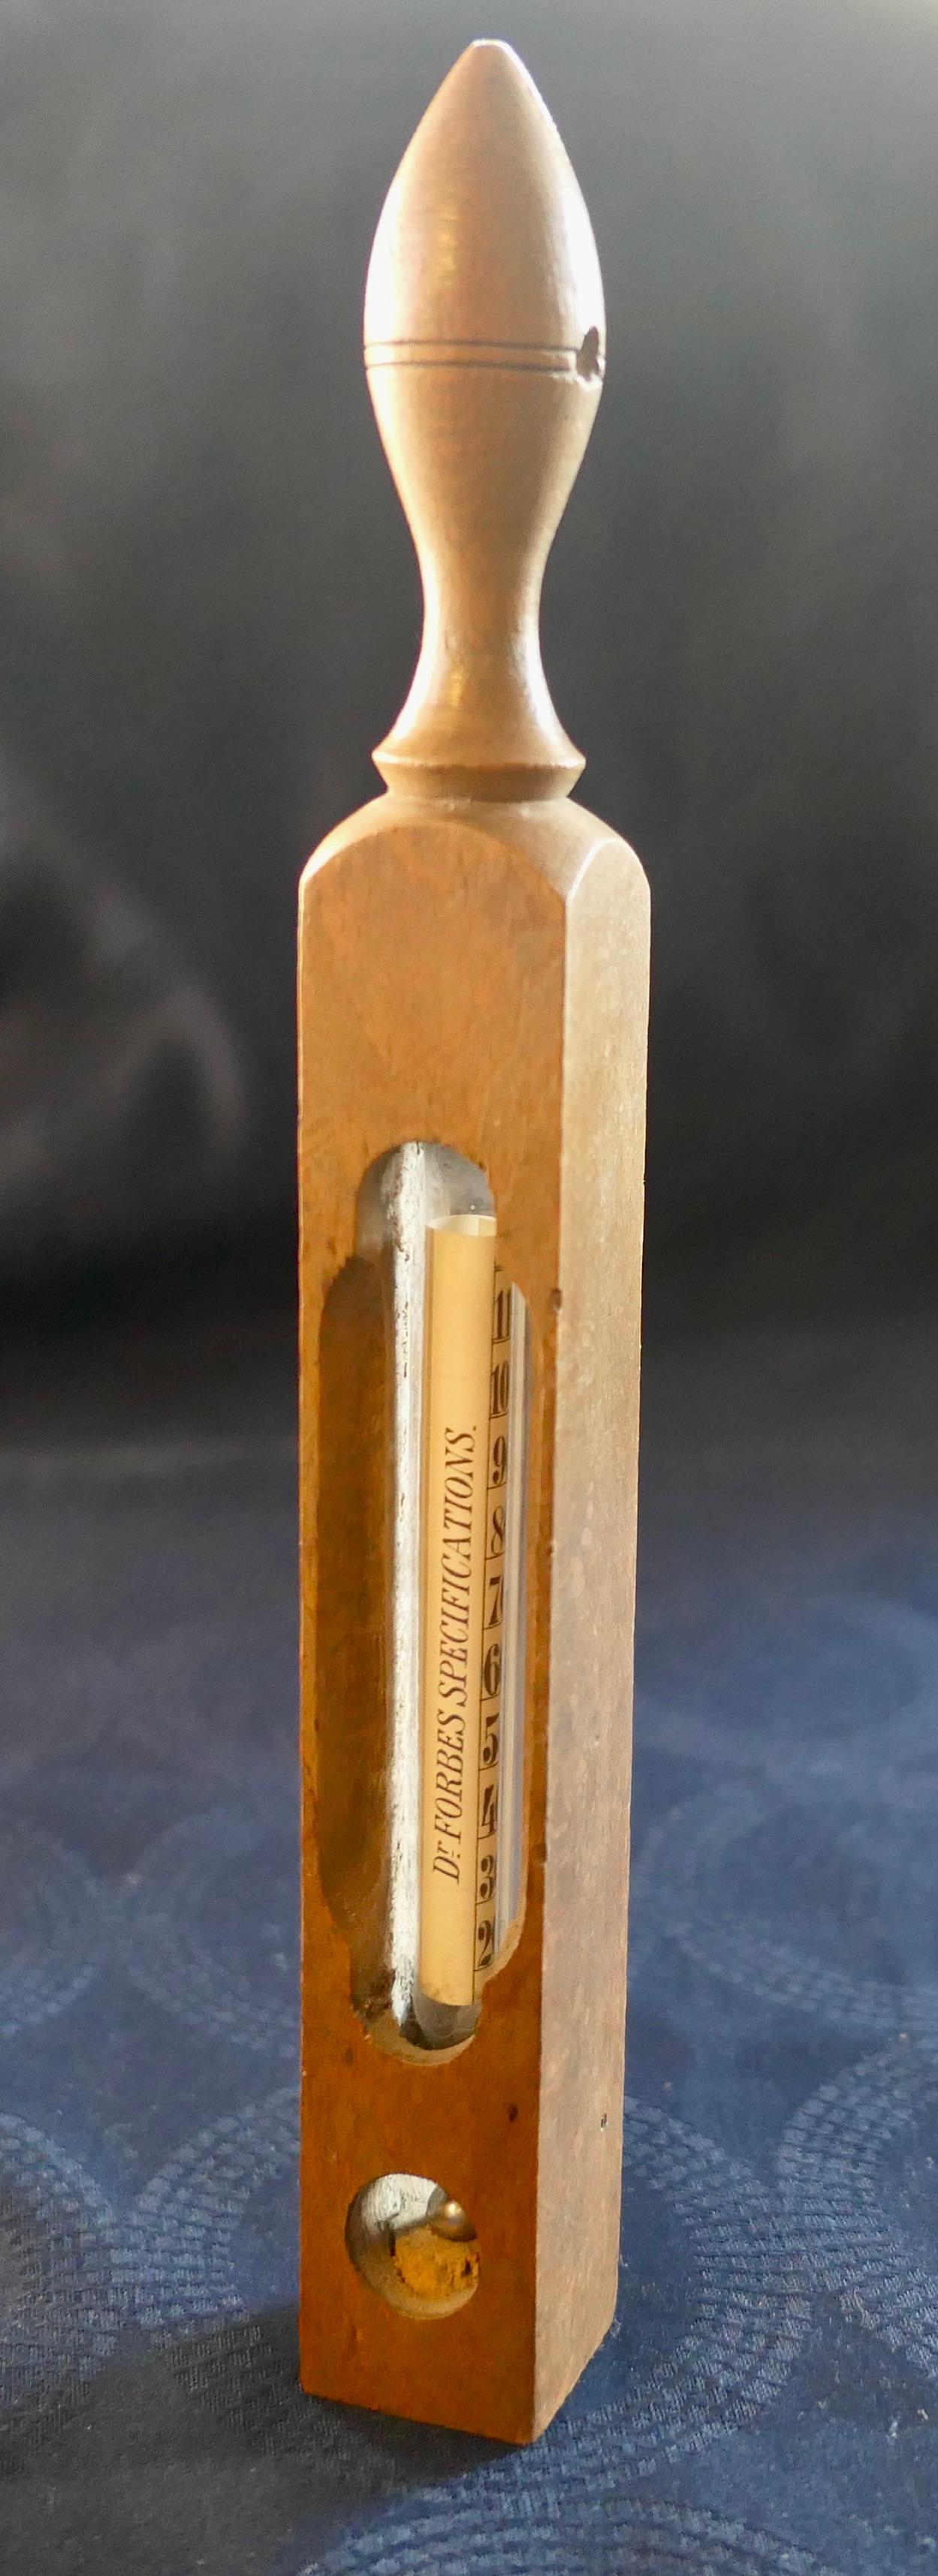 thermomètre de Bath Spécifications de Dr Forbes 

Le thermomètre est doté d'un boîtier en Beeche qui permet de le faire flotter et d'afficher la température numérique ainsi que la température recommandée à partir du
